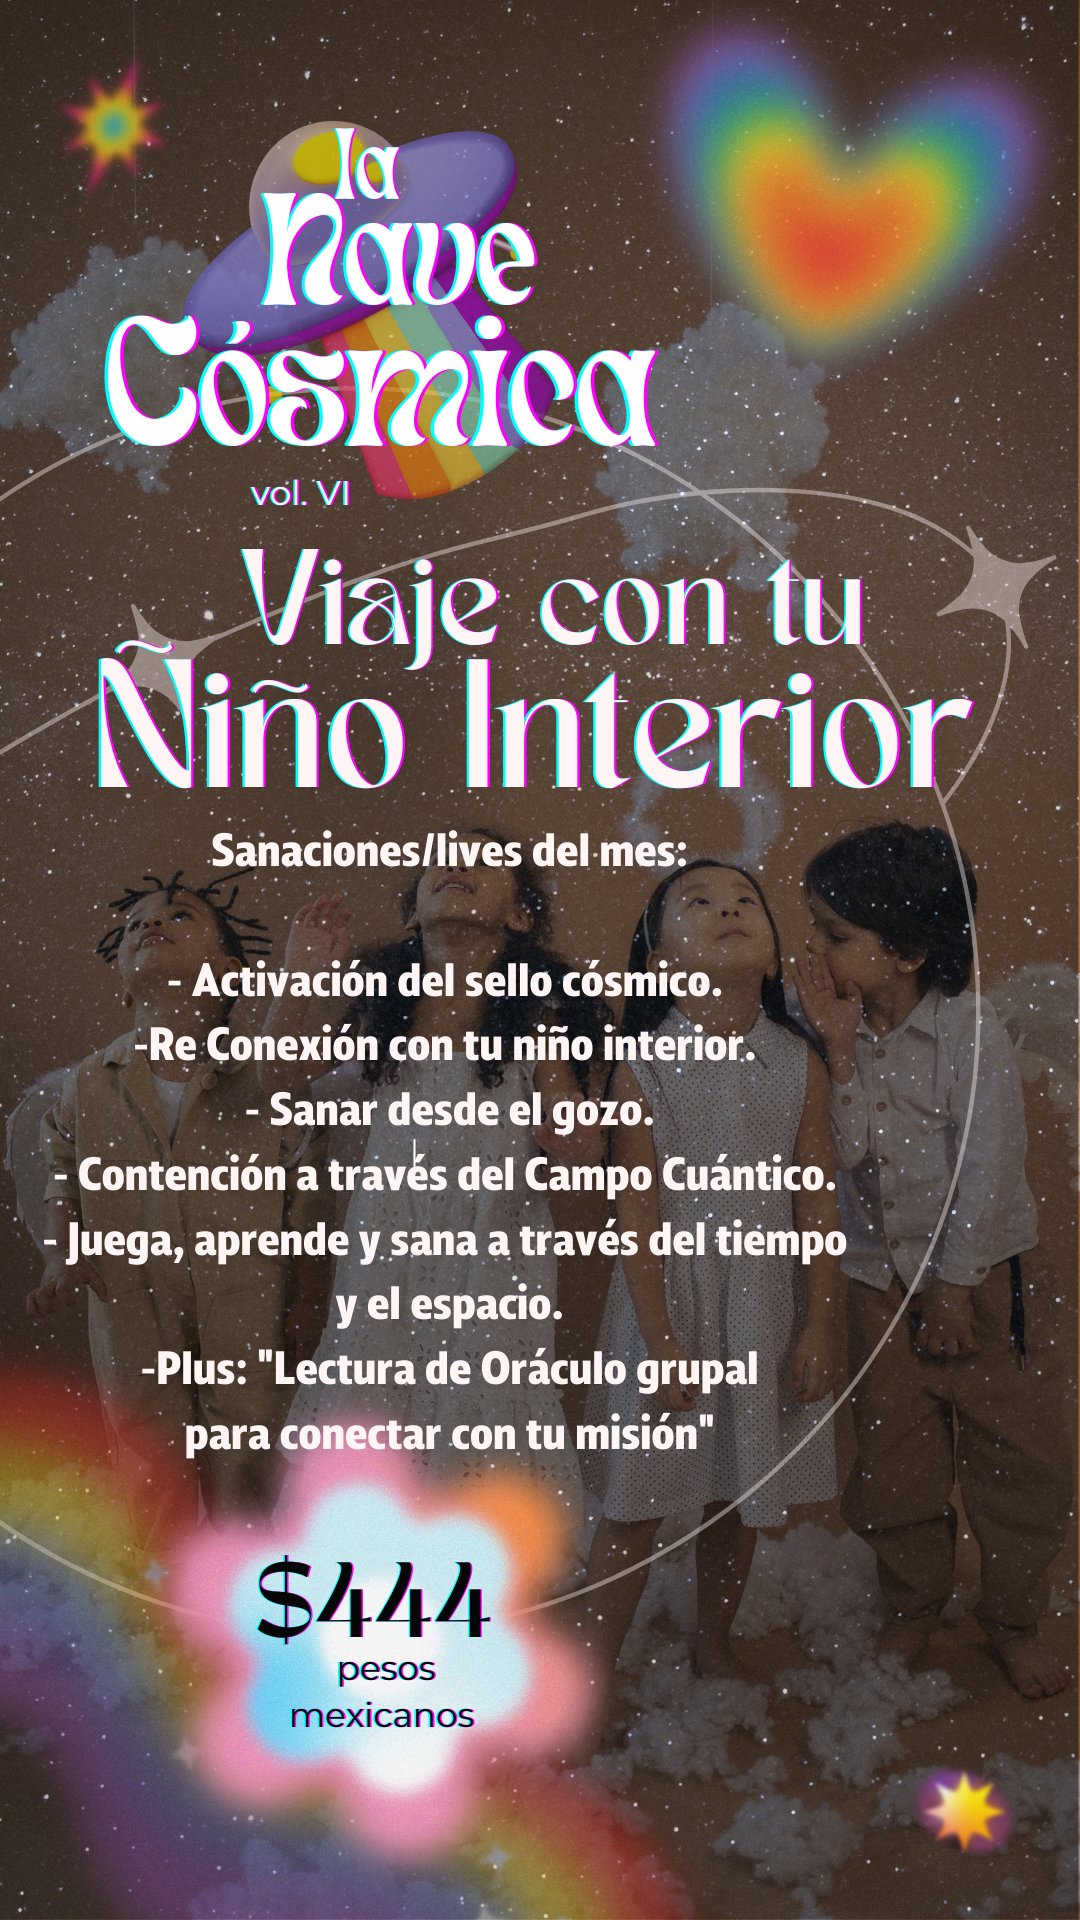 La Nave Cósmica, Edición "Viaje con tu Niño Interior"